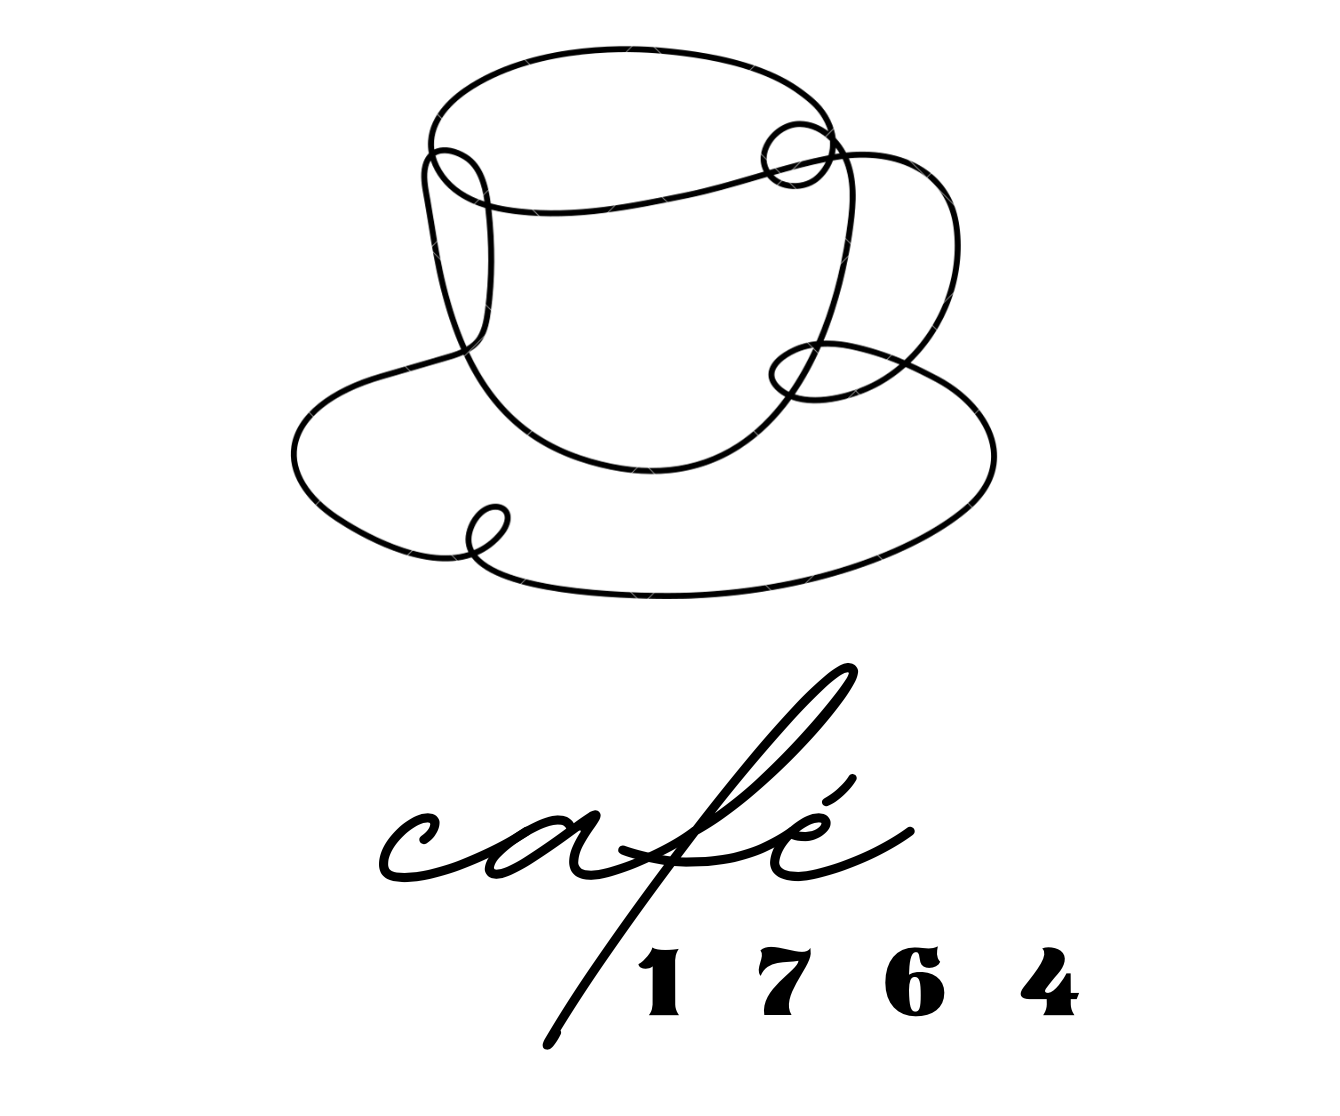 Café 1764